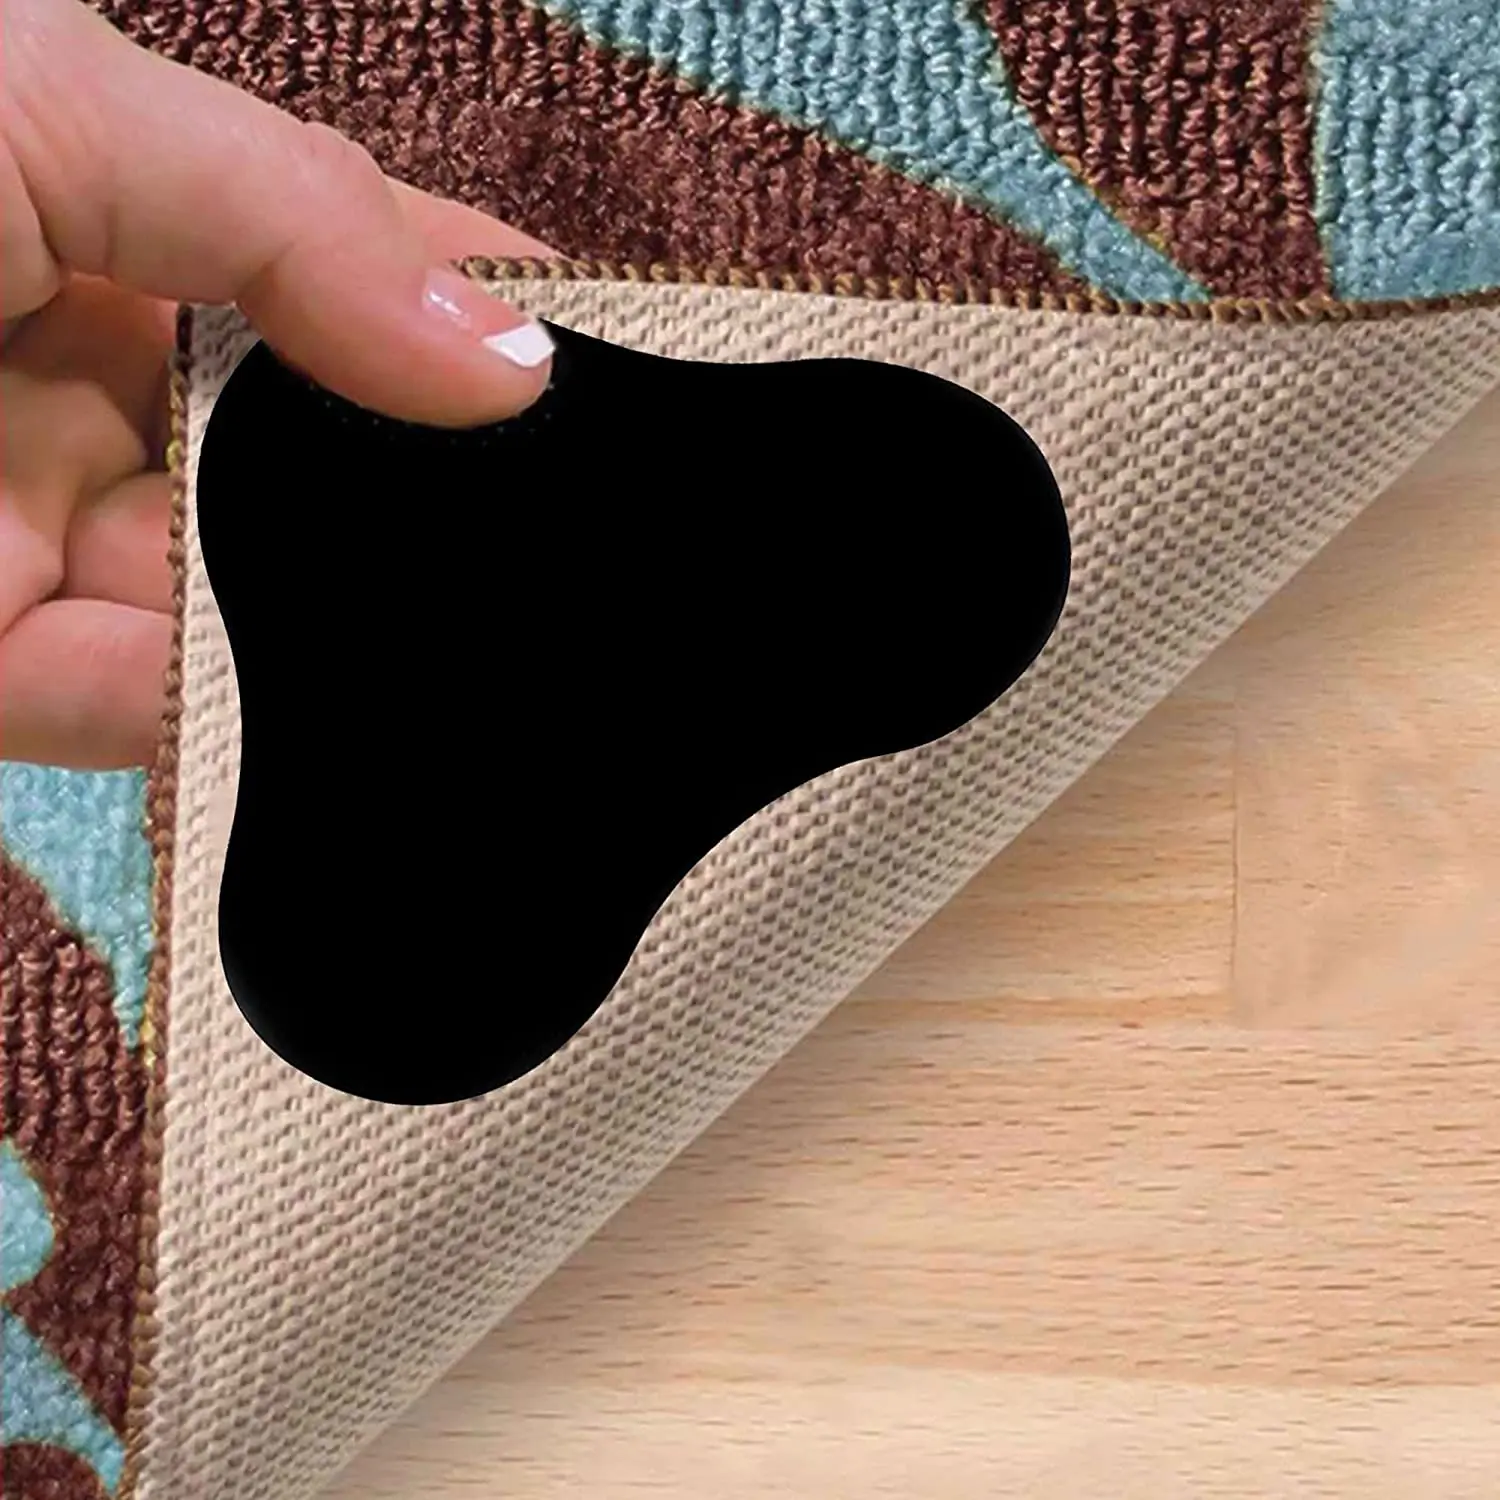 Наклейки на ковровое покрытие с противоскользящим внешним видом делают уголки